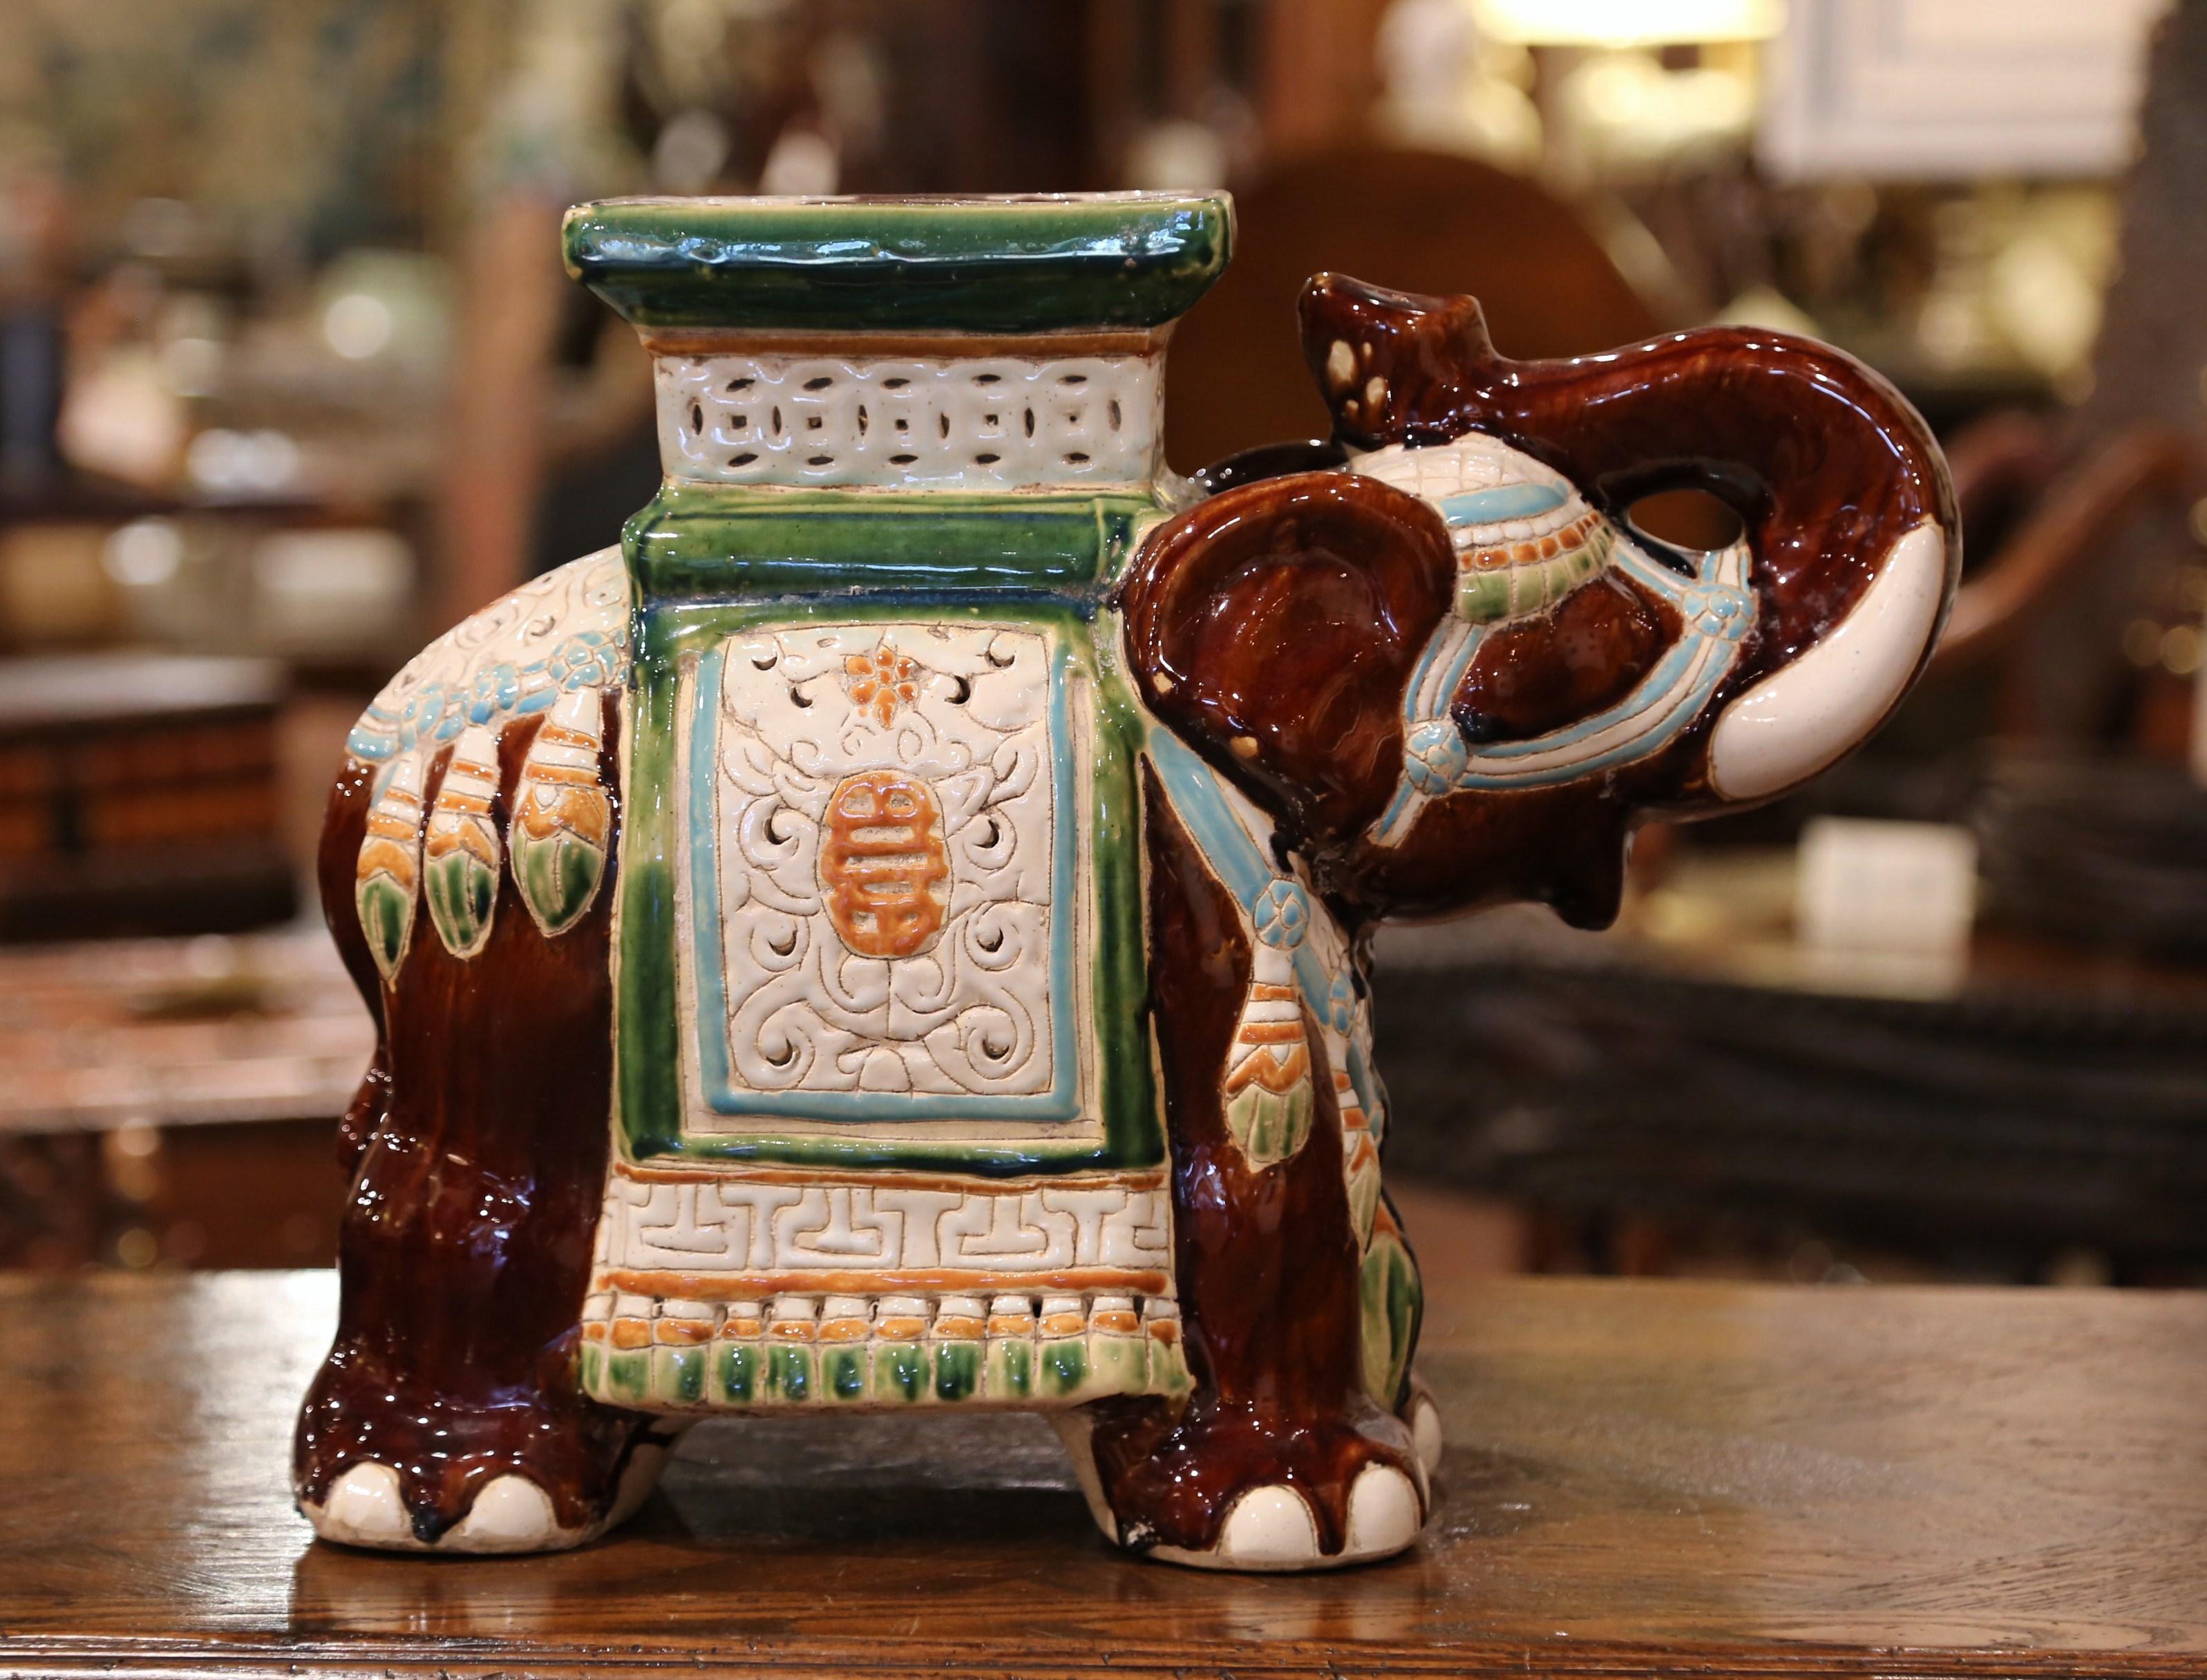 Cet intéressant siège de jardin vintage en porcelaine a été trouvé en France. Fabriqué vers 1960, ce siège en céramique en forme d'éléphant à la trompe levée (signe de chance en Asie) est lourdement décoré d'ornements orientaux. Le mammifère coloré